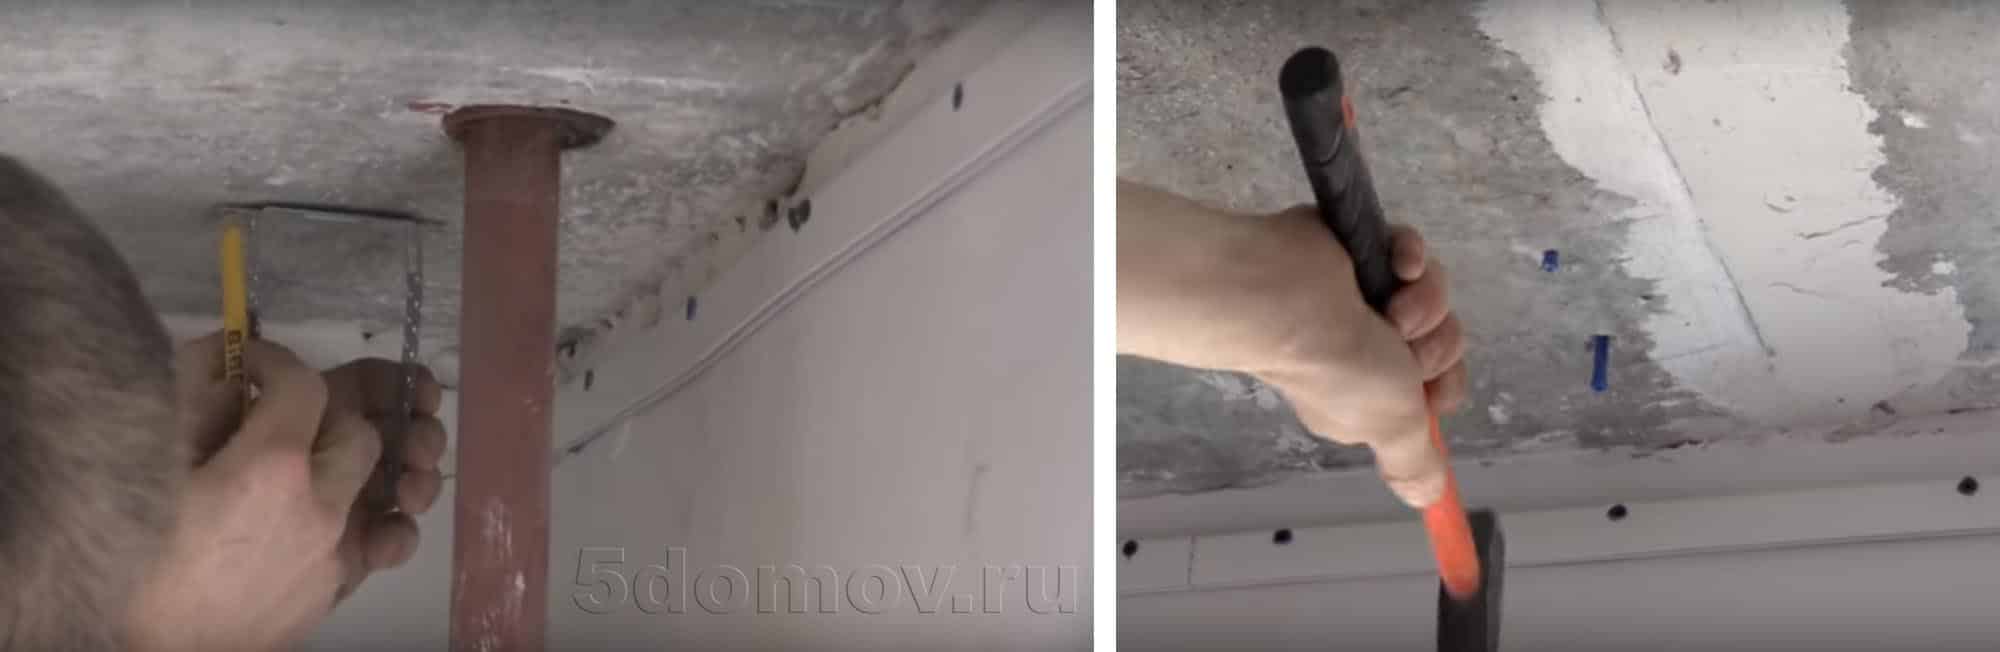 Как шпаклевать потолок под закладную для штор